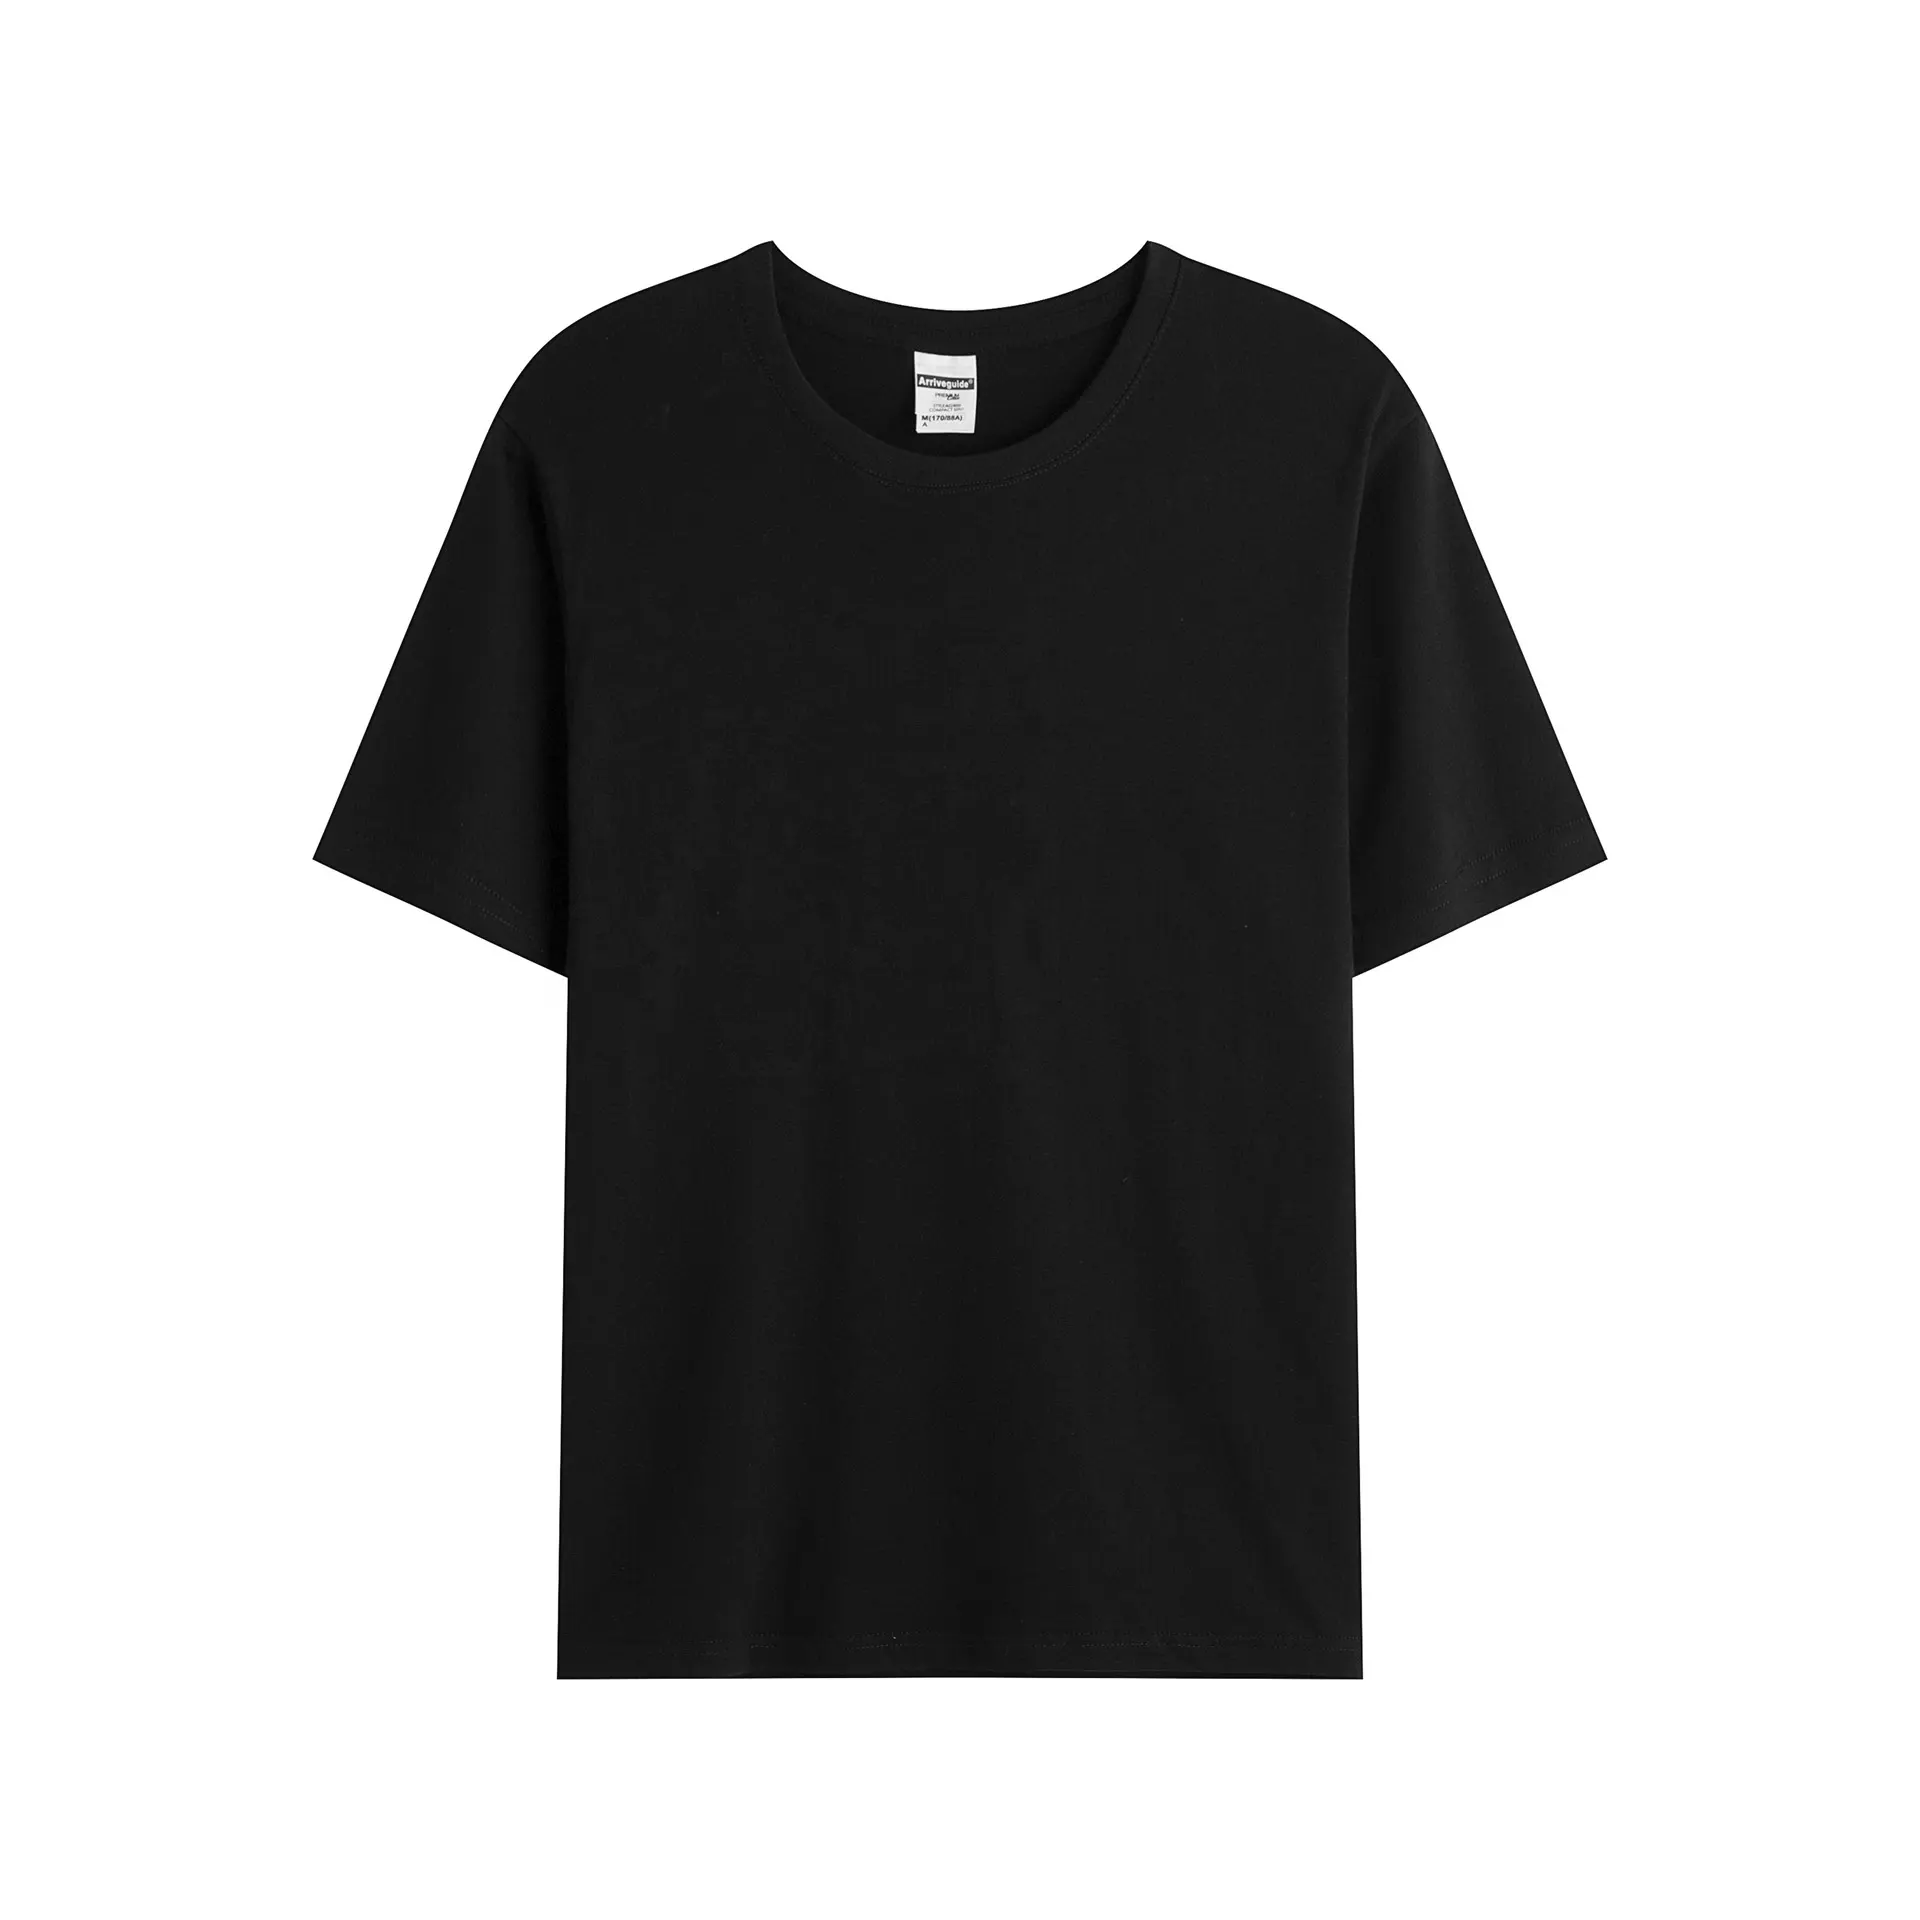 Camiseta 100% de algodón con cuello redondo, camiseta personalizada con logotipo impreso